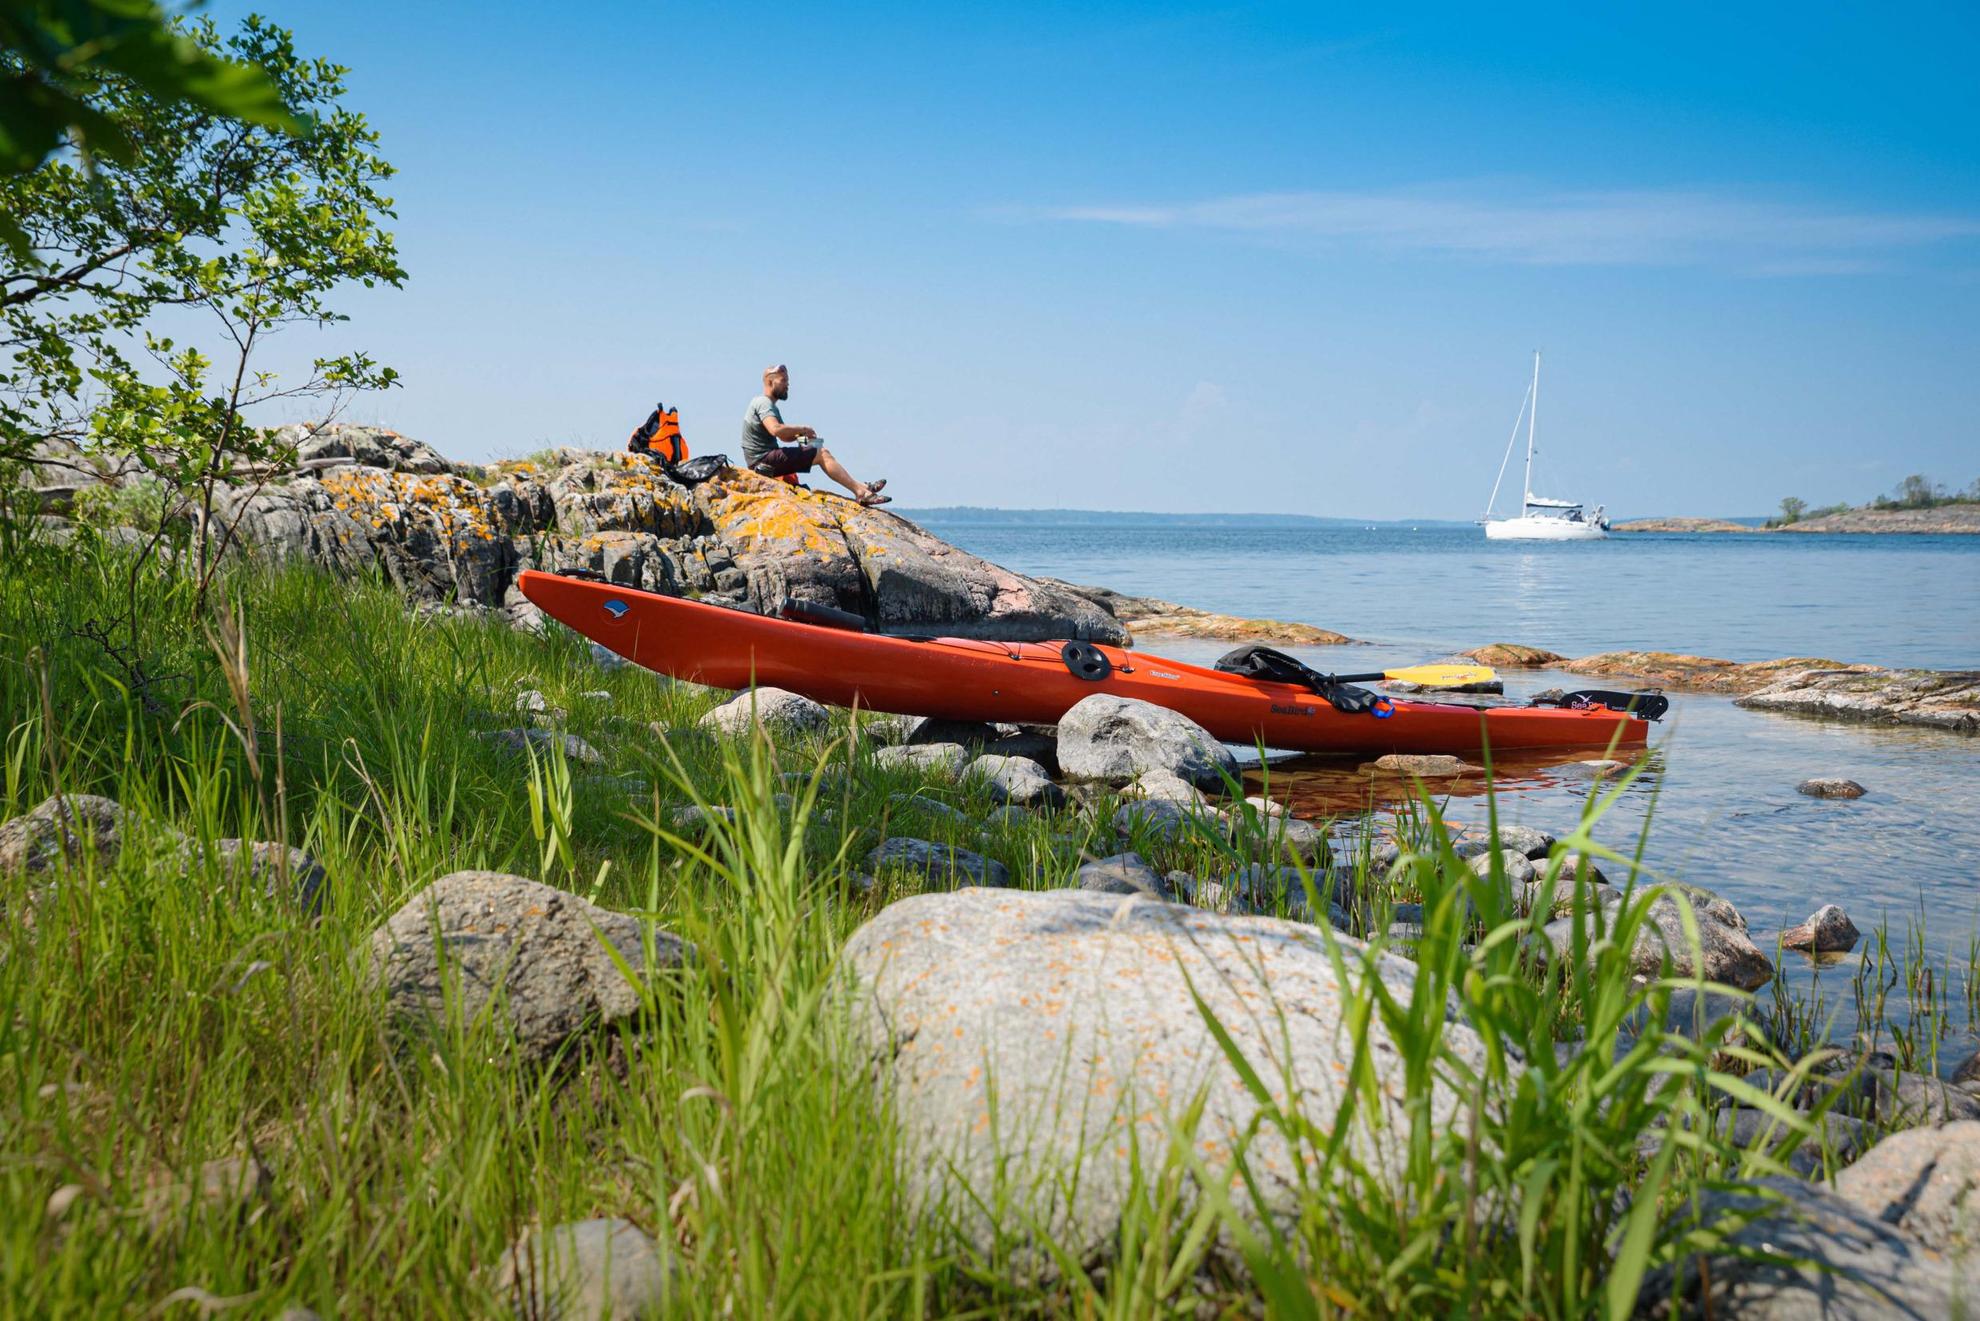 Ein orangefarbenes Kajak liegt am Wasser, während ein Mann auf den Klippen zu Mittag isst. Im Hintergrund ist ein weißes Segelboot zu sehen.